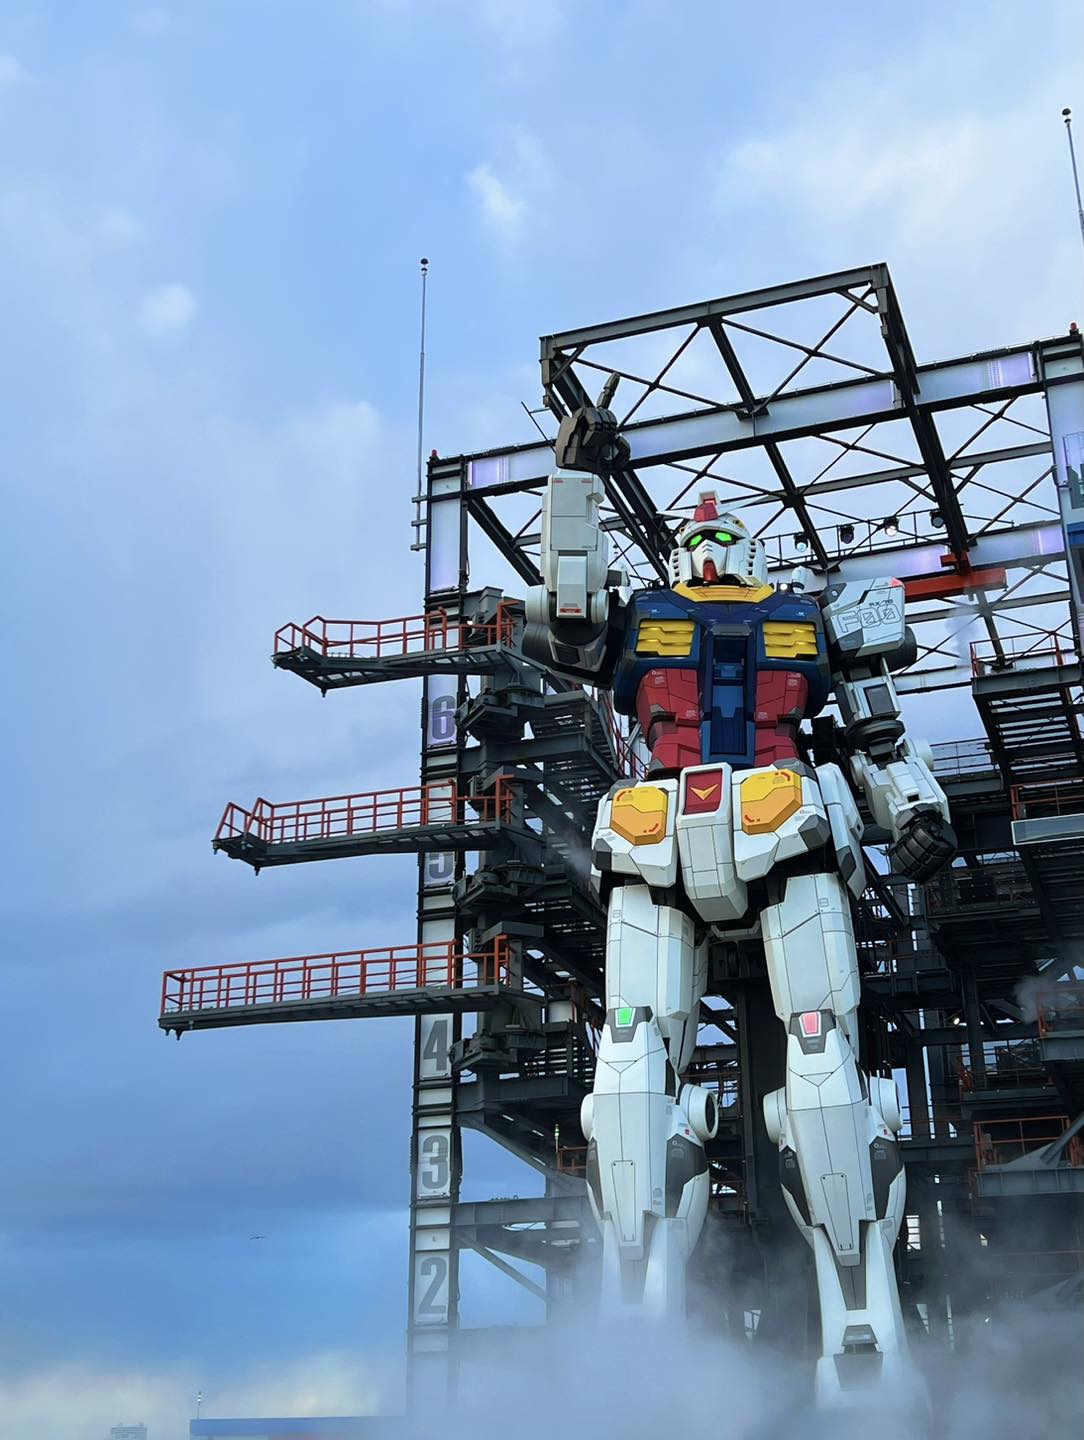 Gundam Factory @ Yokohama, Japan